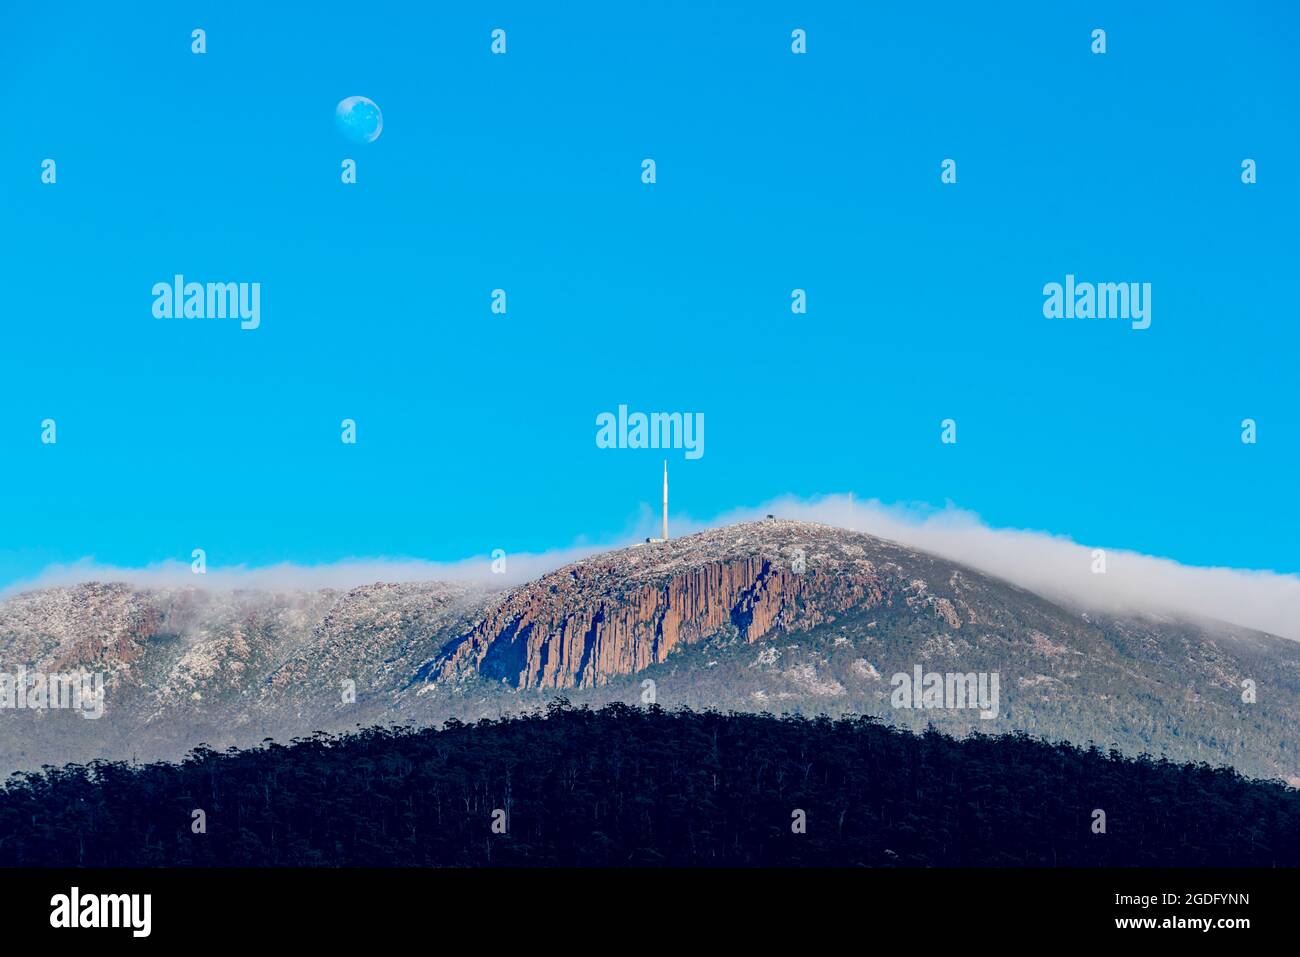 La lune étant encore en haut, une couverture de nuags matinaux se déroule au-dessus de Kunanyi (Mont Wellington) en direction de Hobart, capitale de la Tasmanie en Australie Banque D'Images